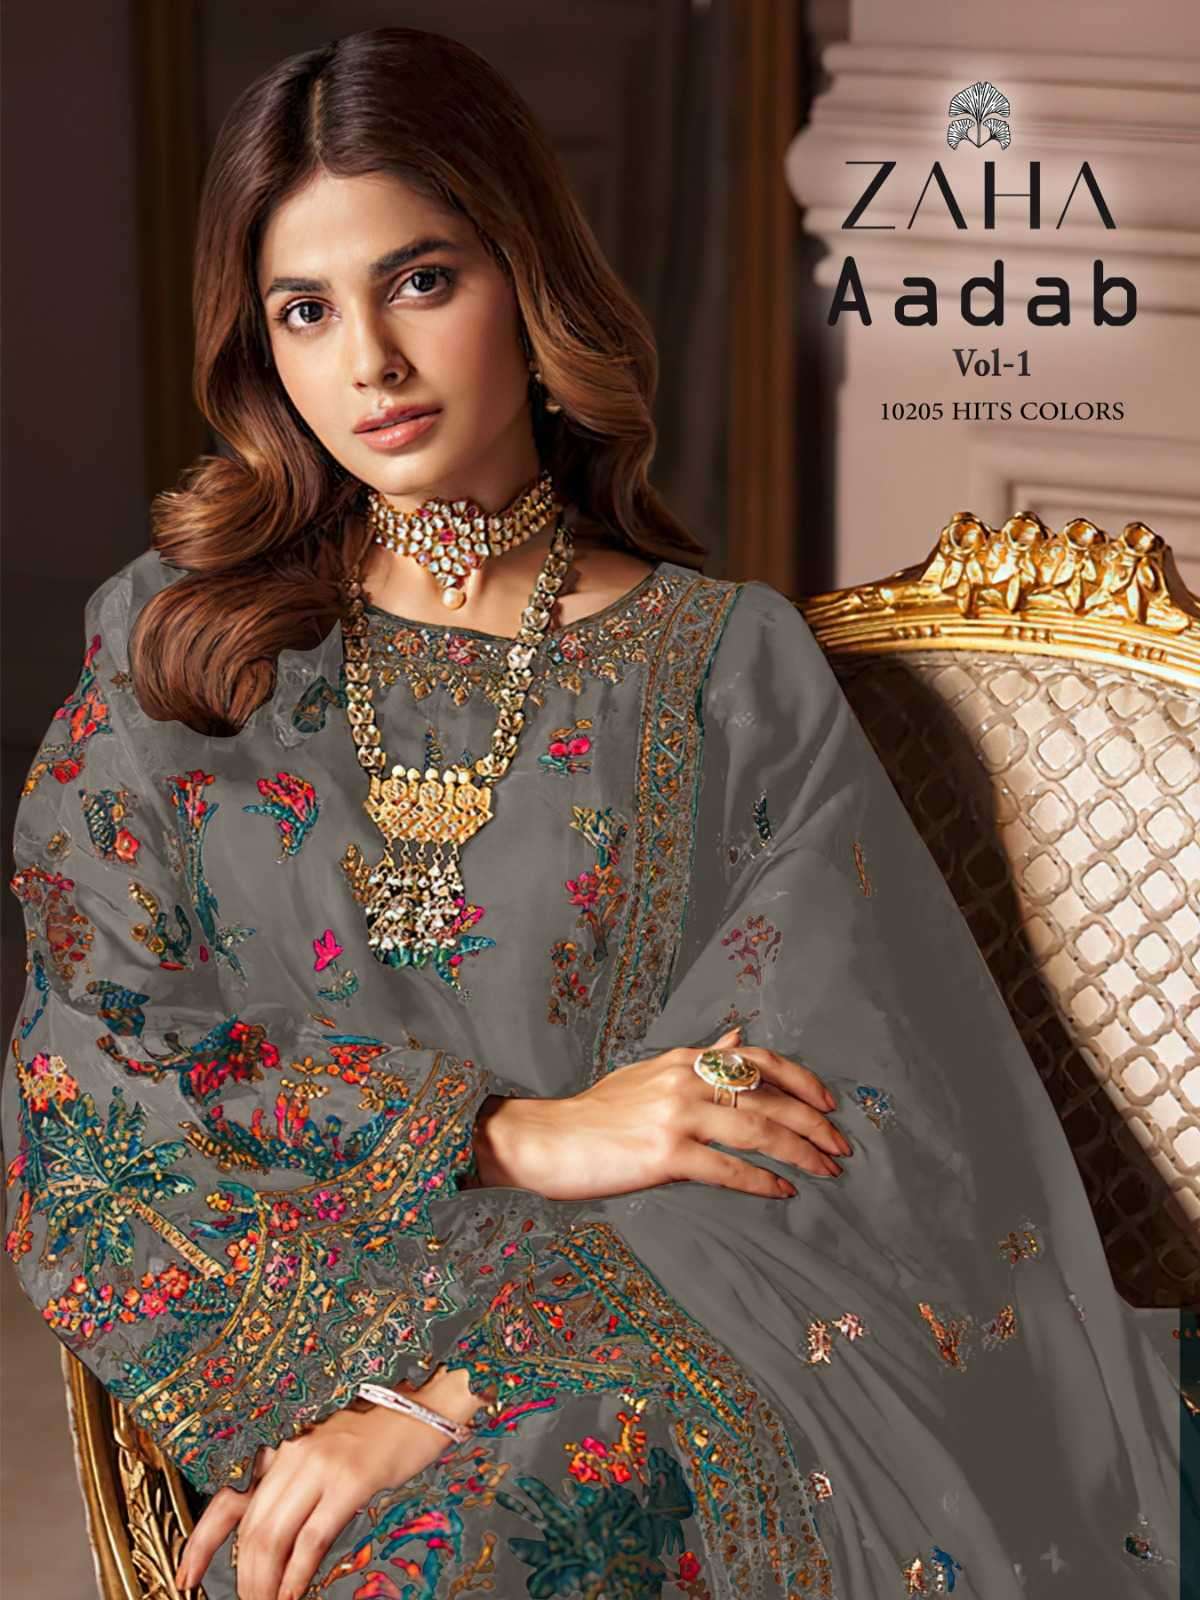 zaha aadab vol 1 10205 hits colors heavy georgette suit 